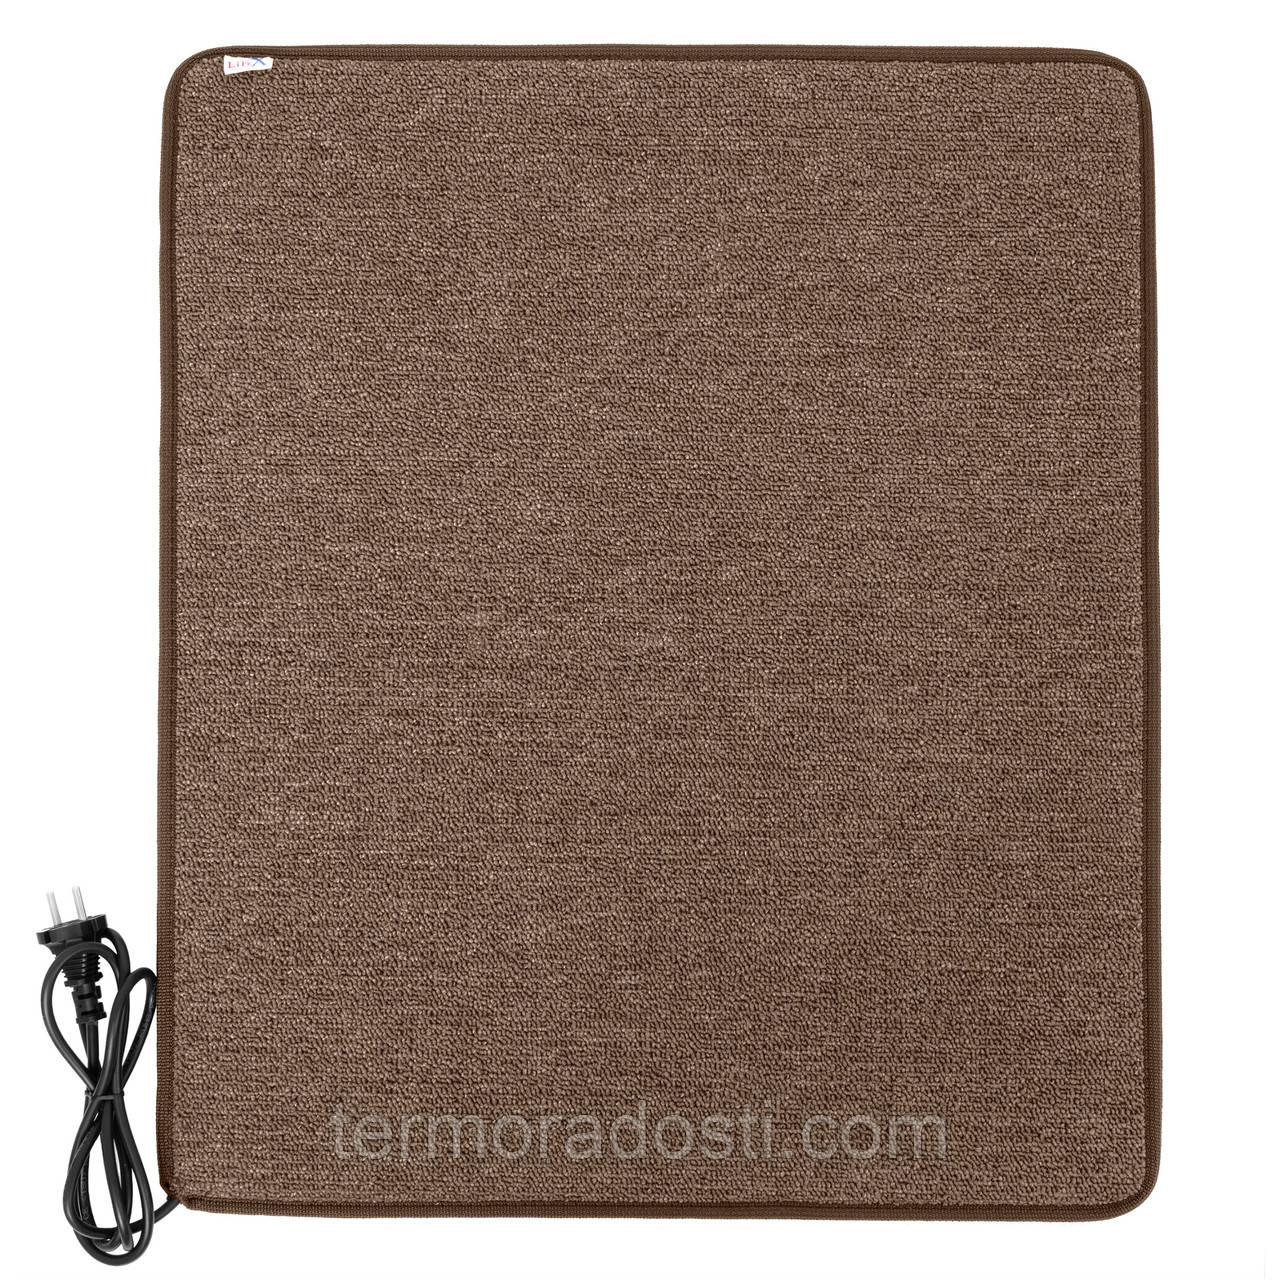 Теплий килимок з підігрівом LIFEX WC 50x80 Коричневий  | Електрокилим для ніг Warm Carpet